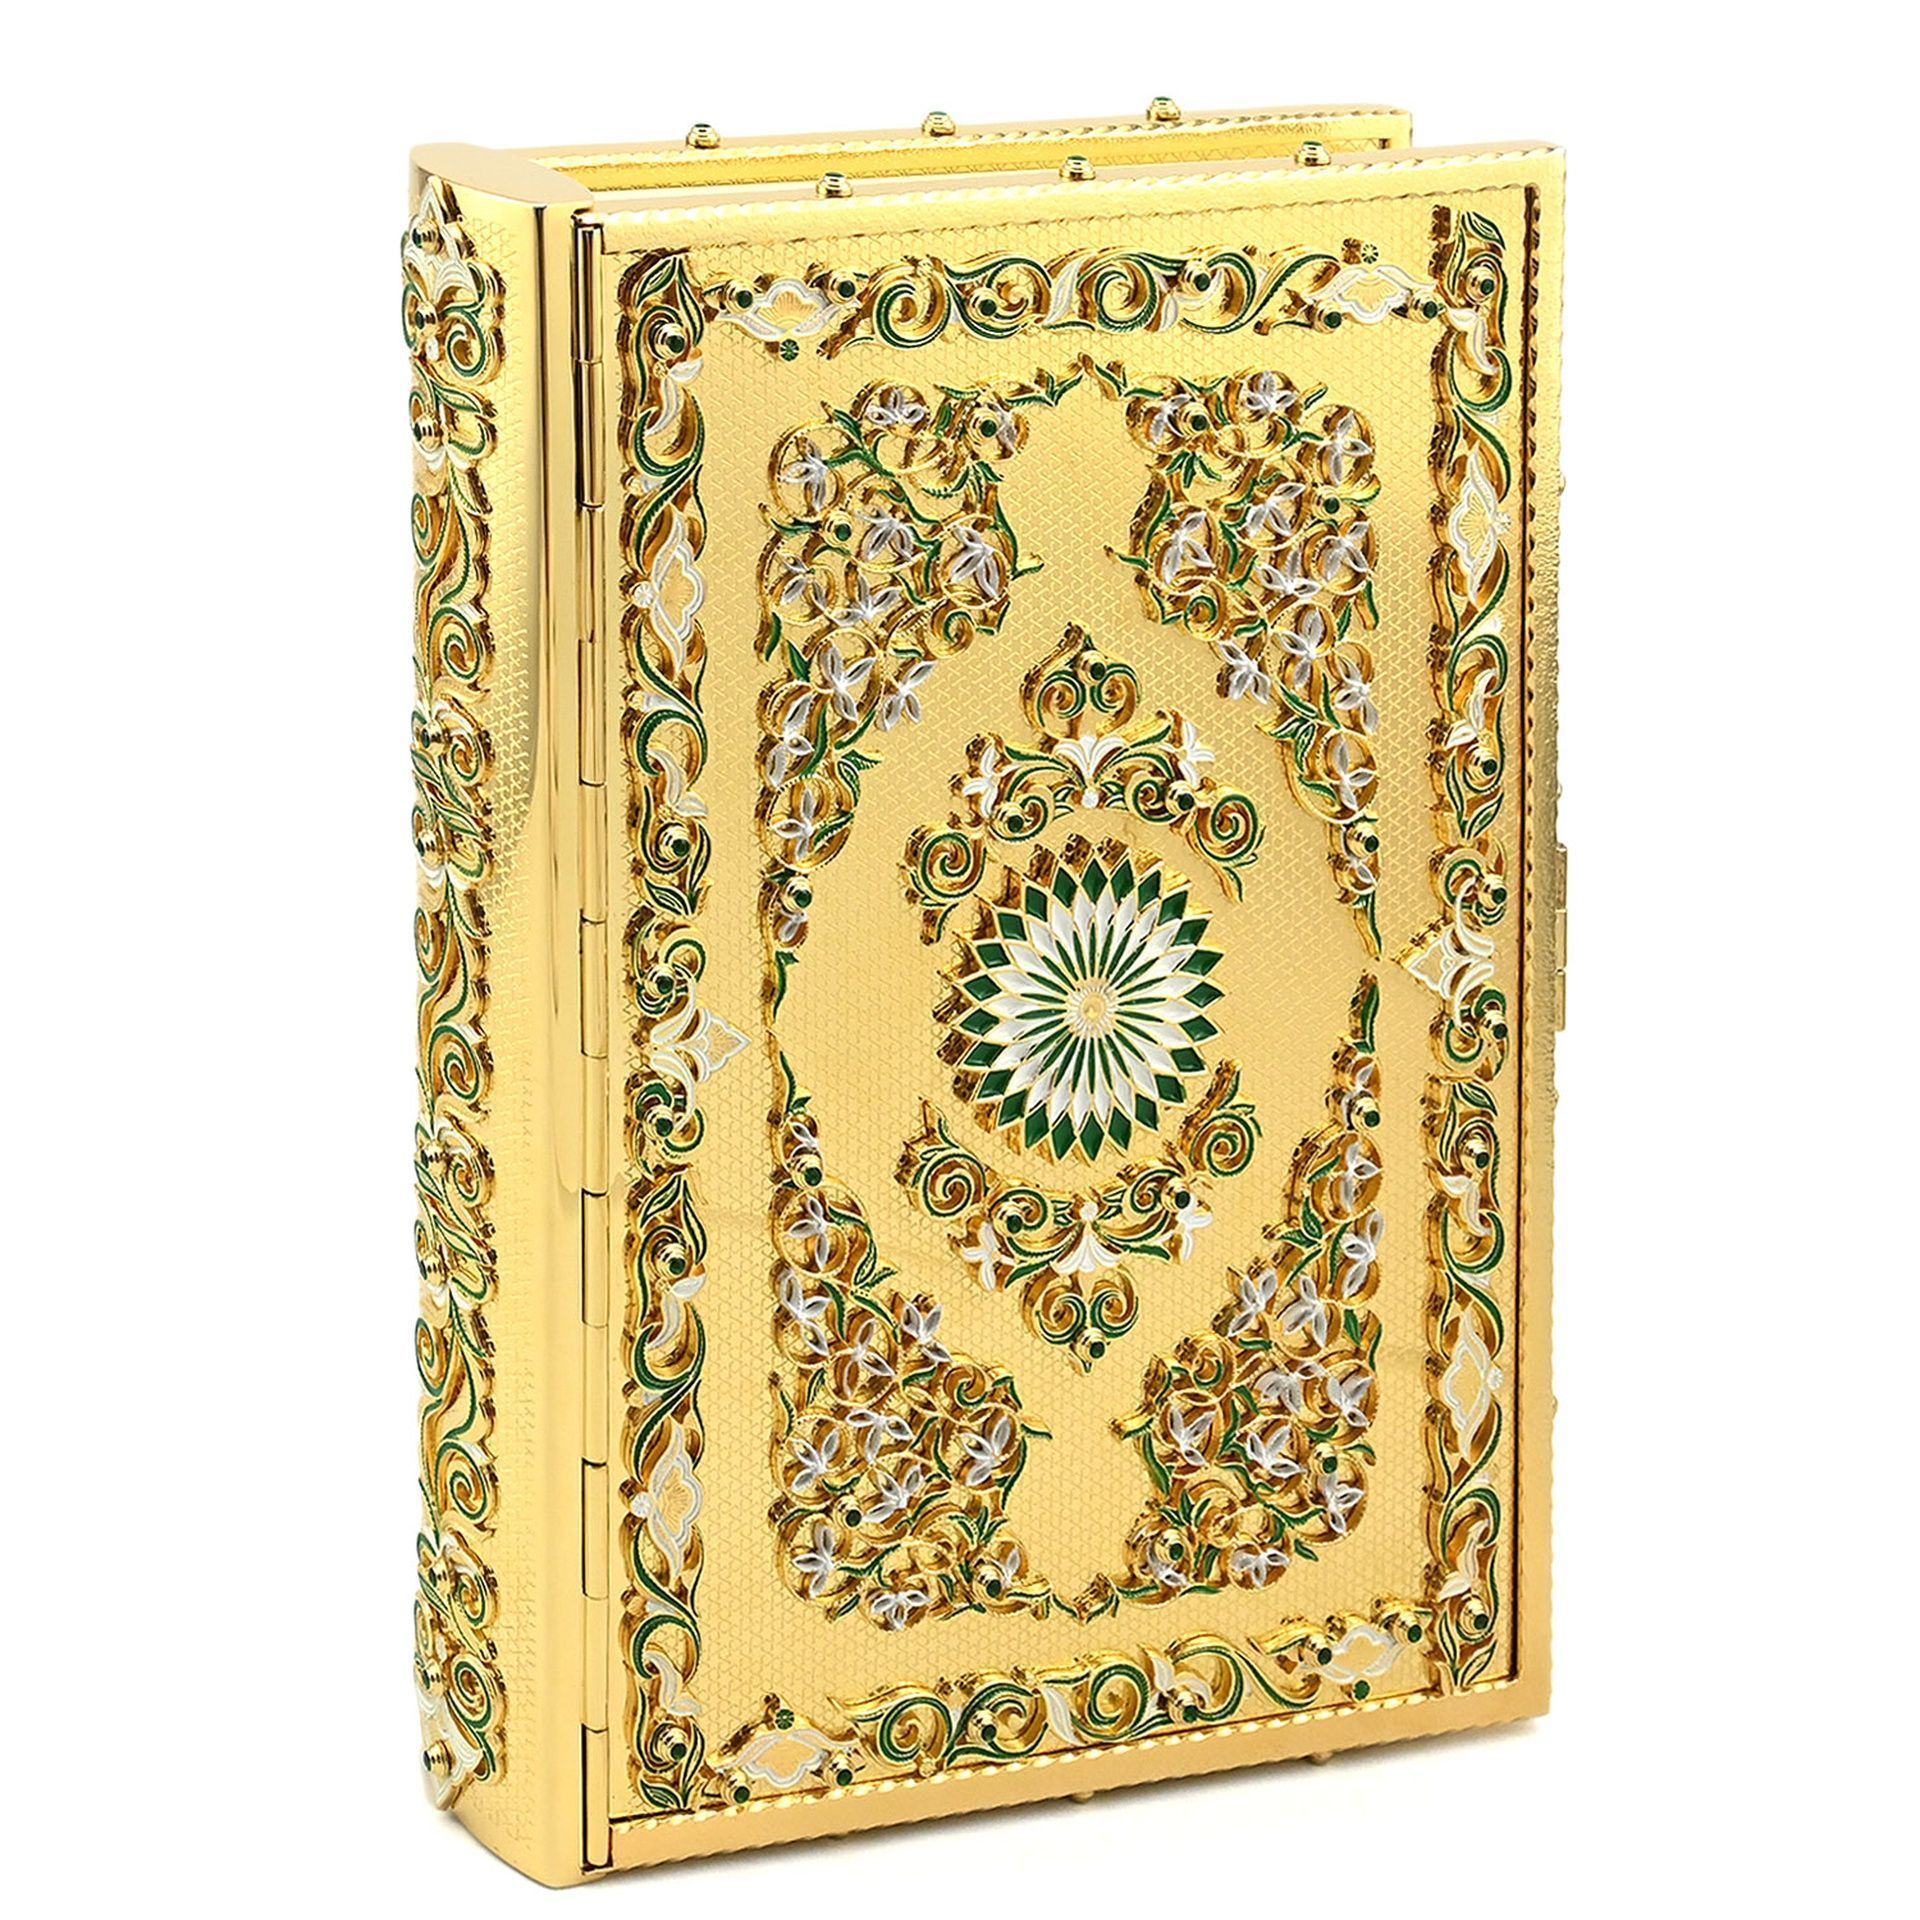 Коран в подарок для Мусульман